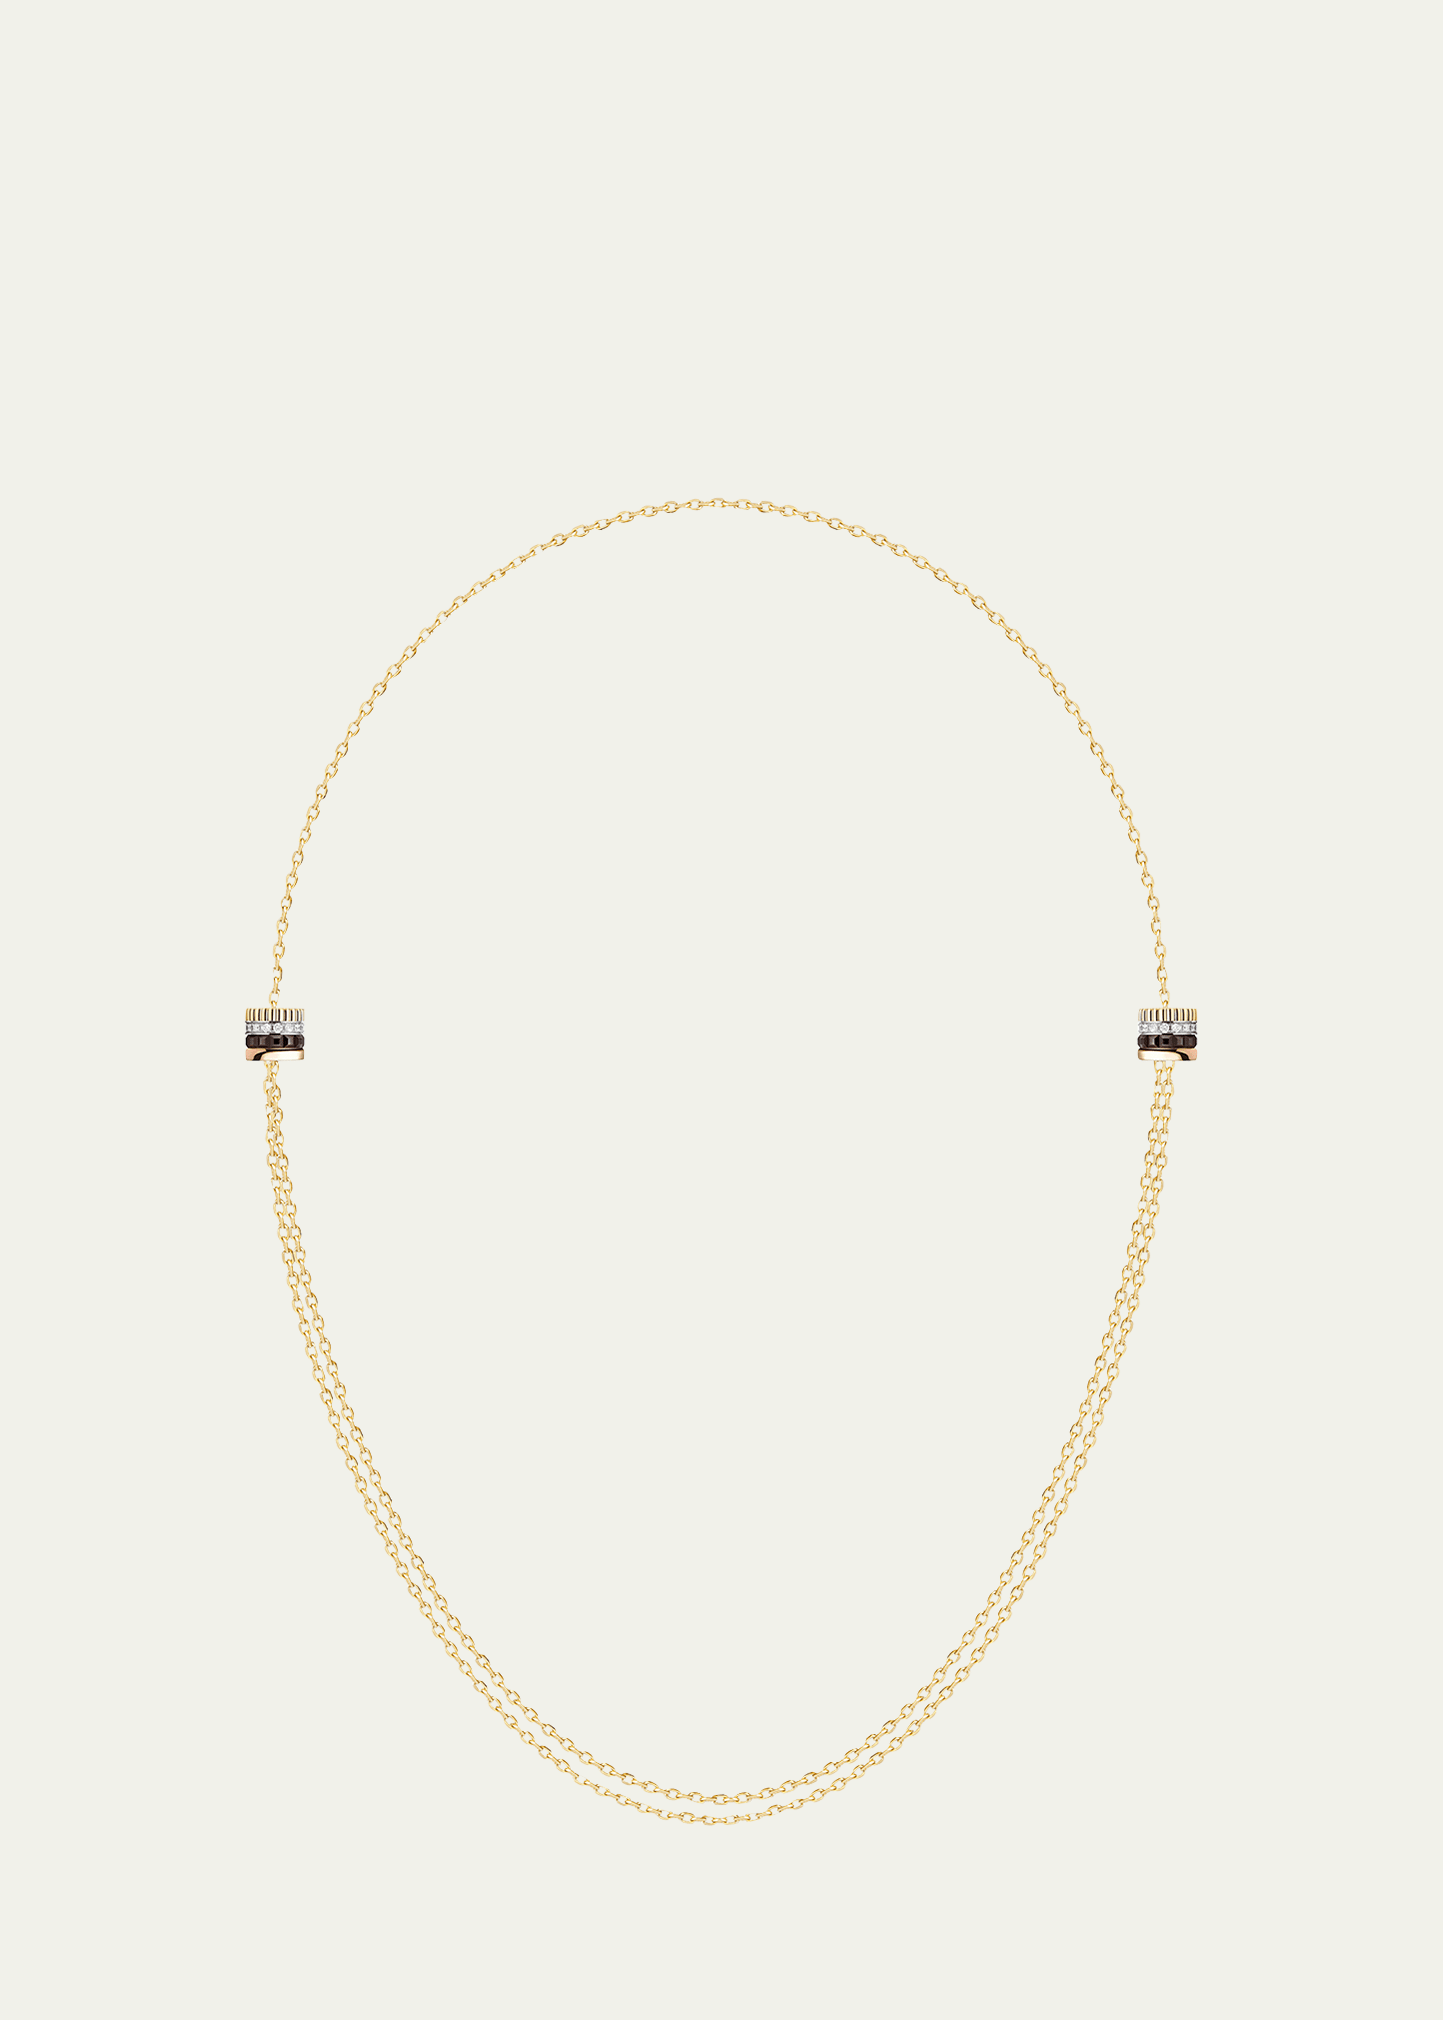 Quatre Classique Necklace with 2 Motifs